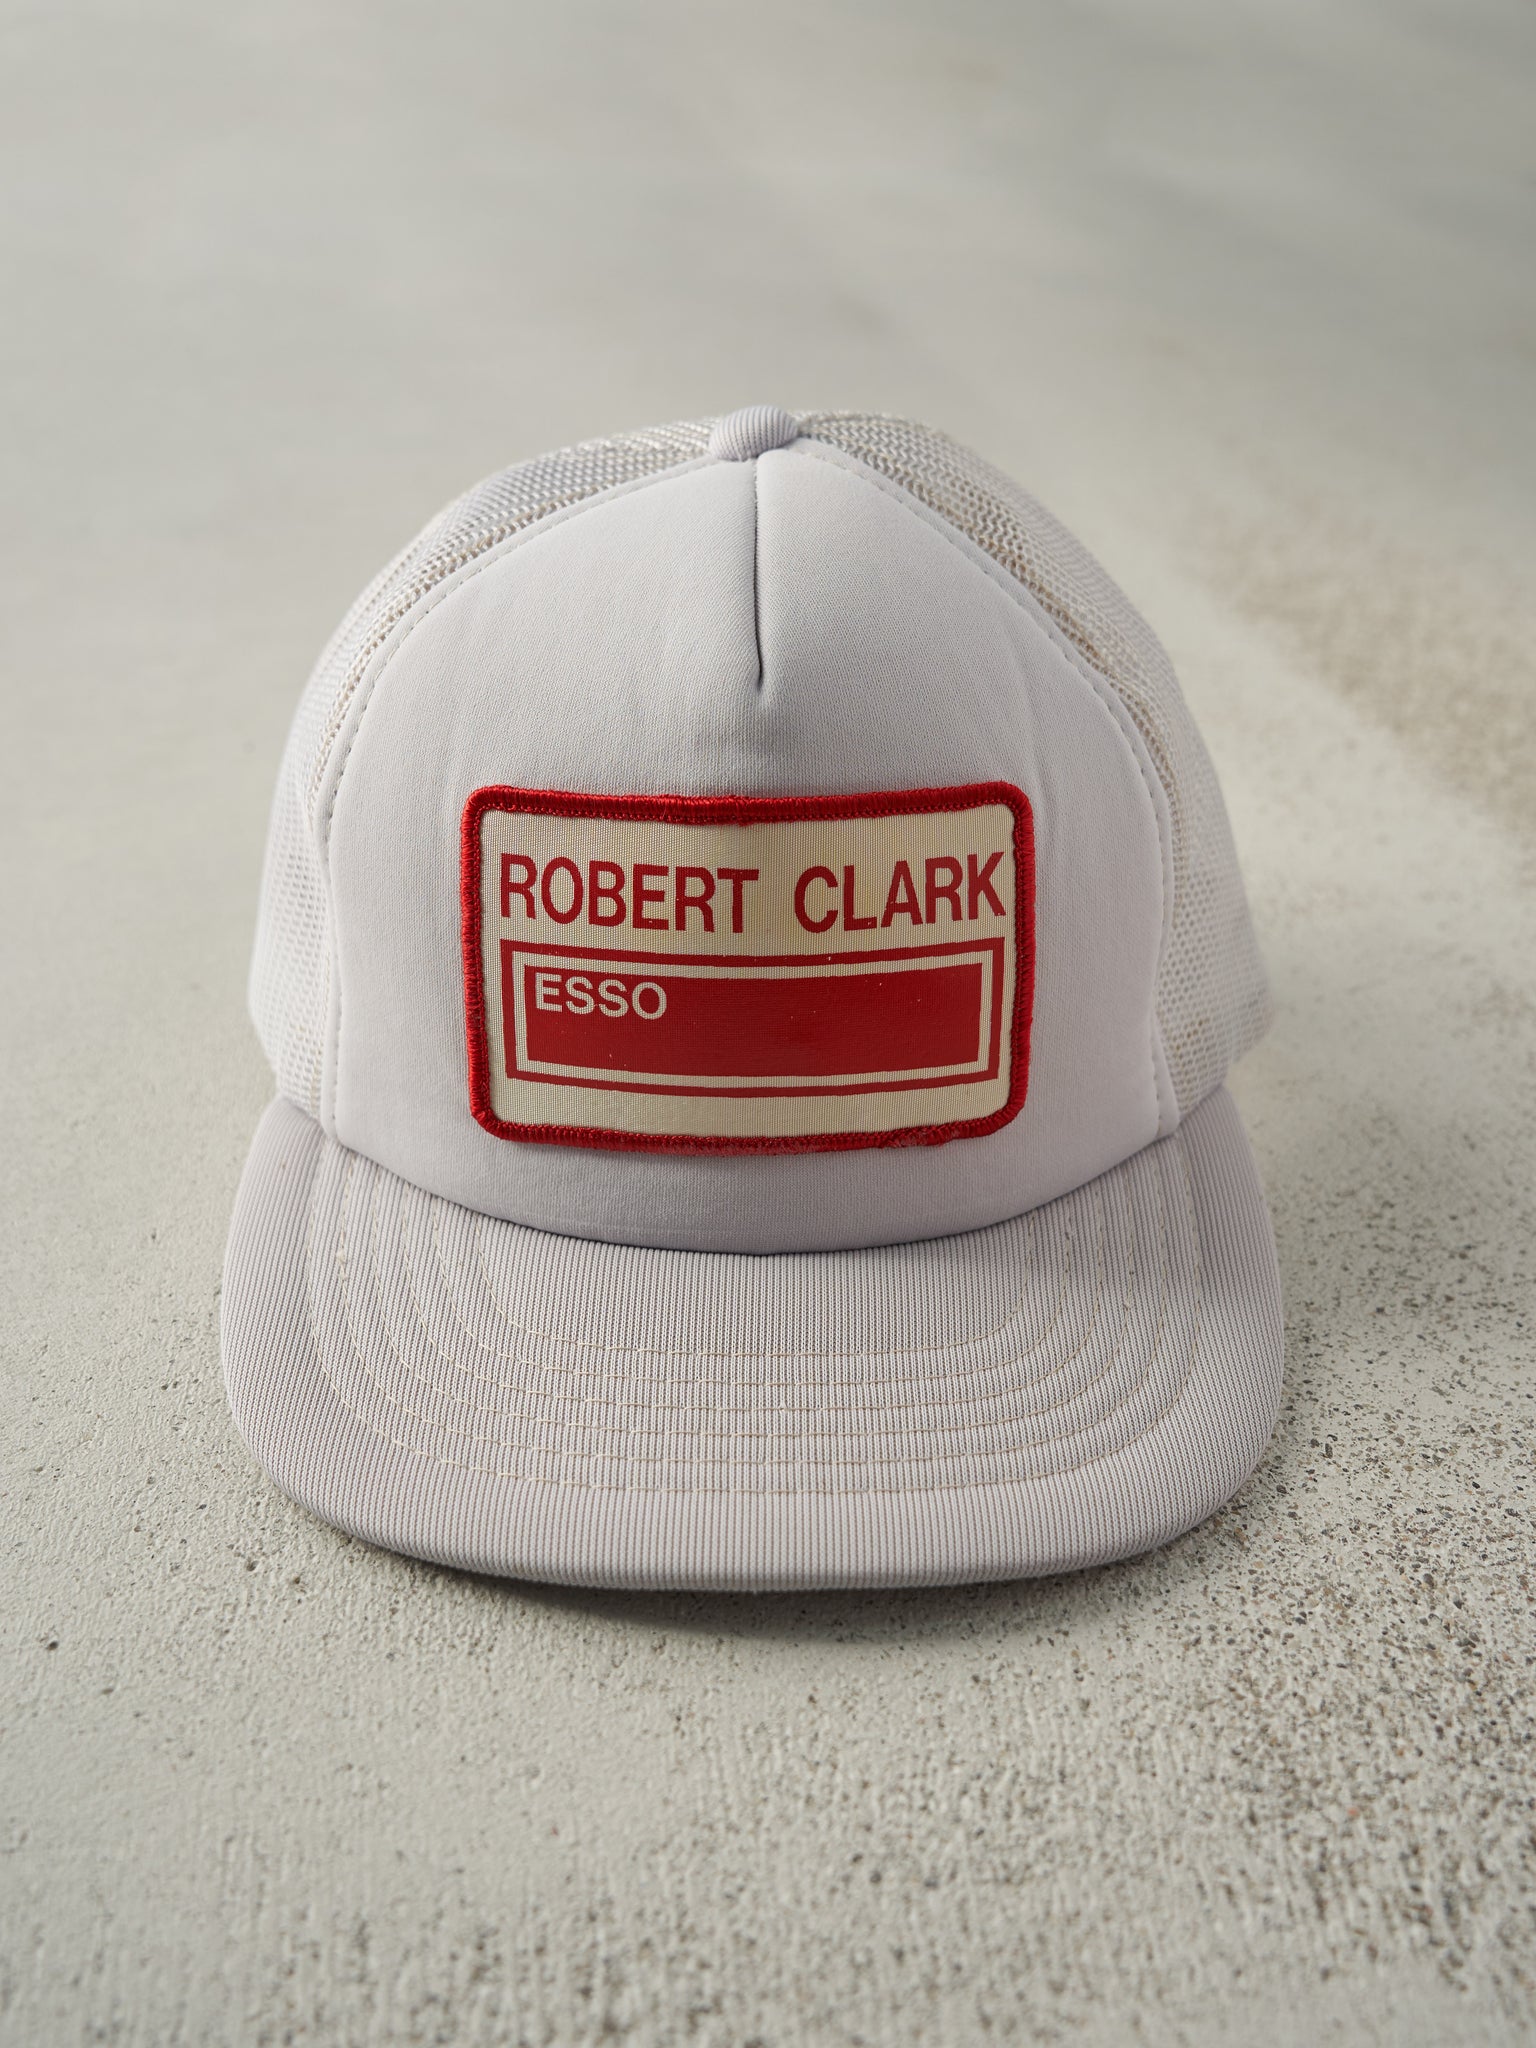 Vintage 80s Gey Robert Clark Esso Foam Trucker Hat